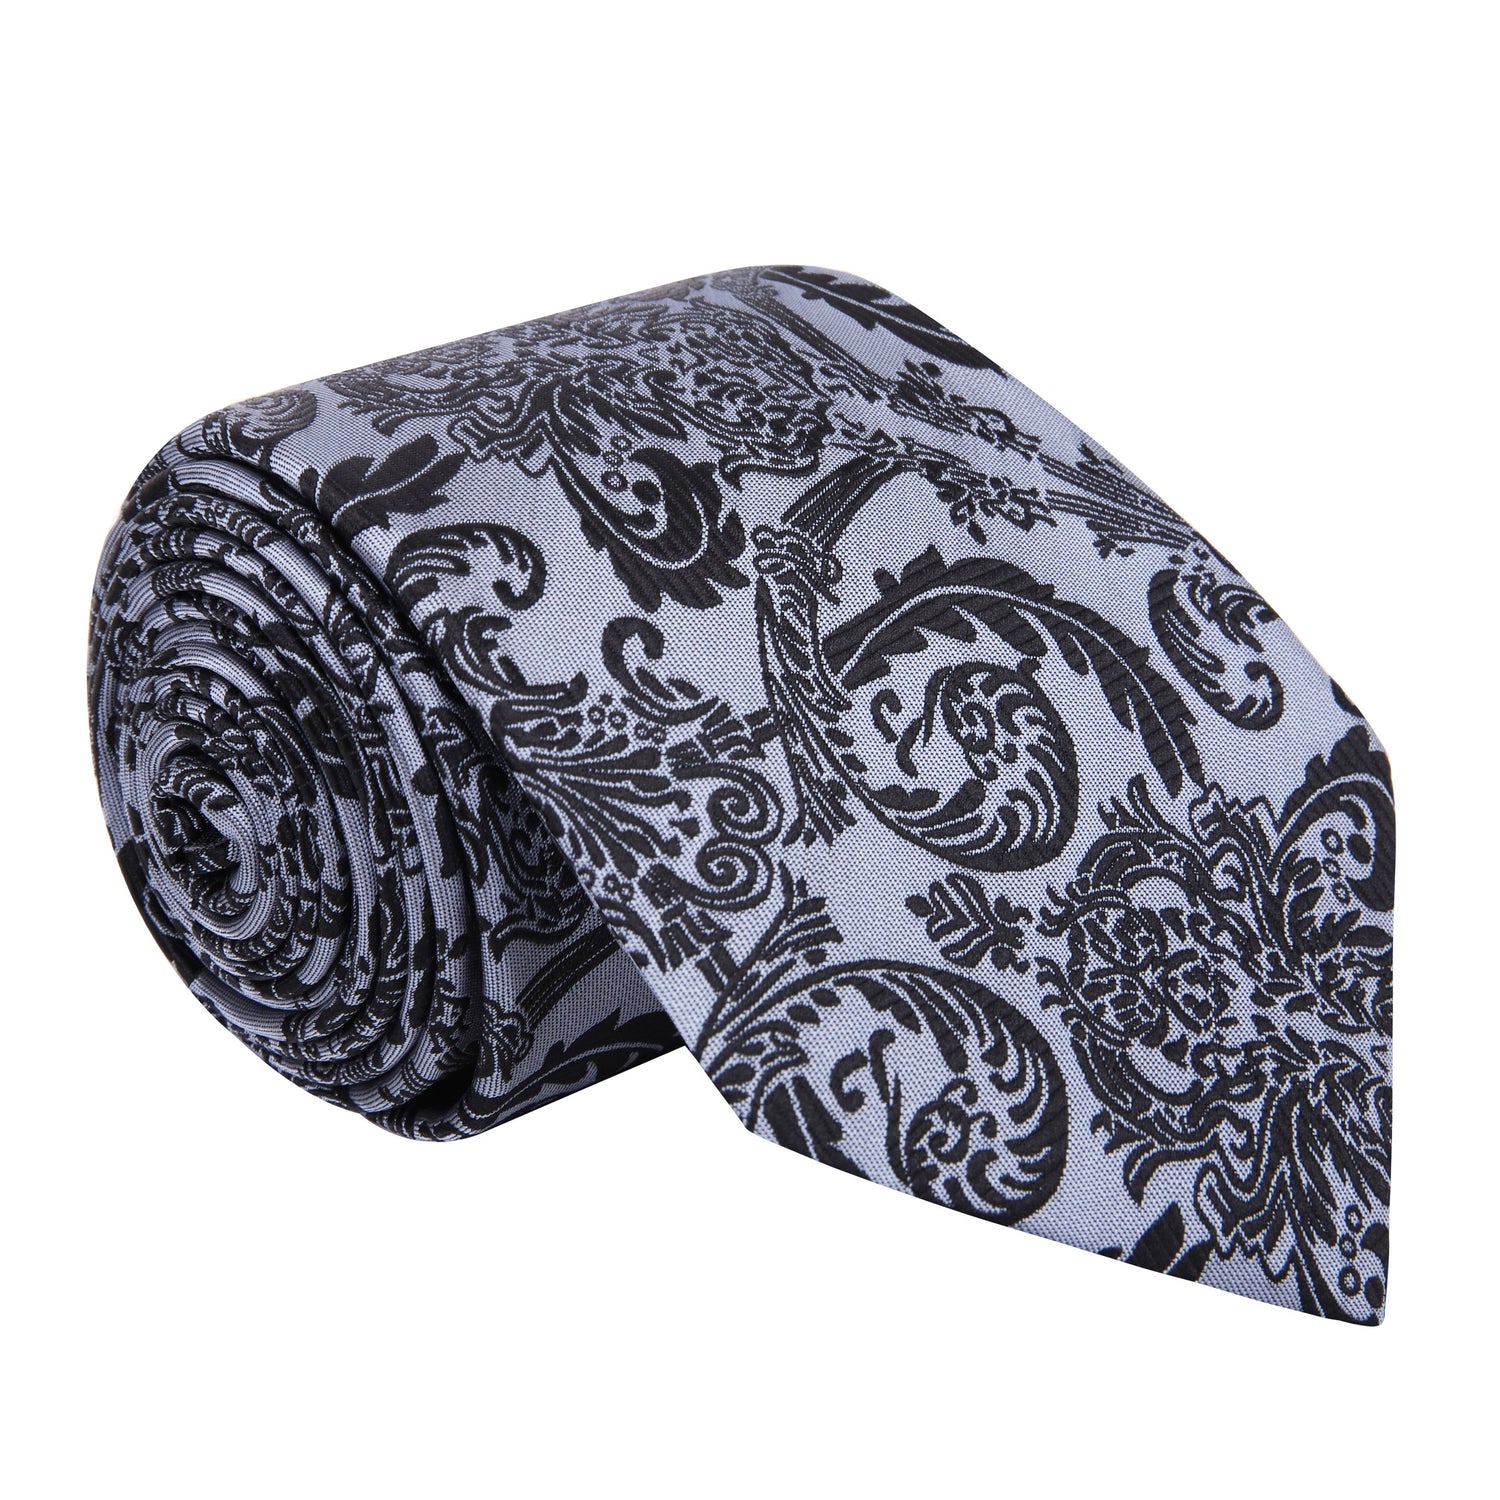 A Silver, Black Floral Pattern Silk Necktie 